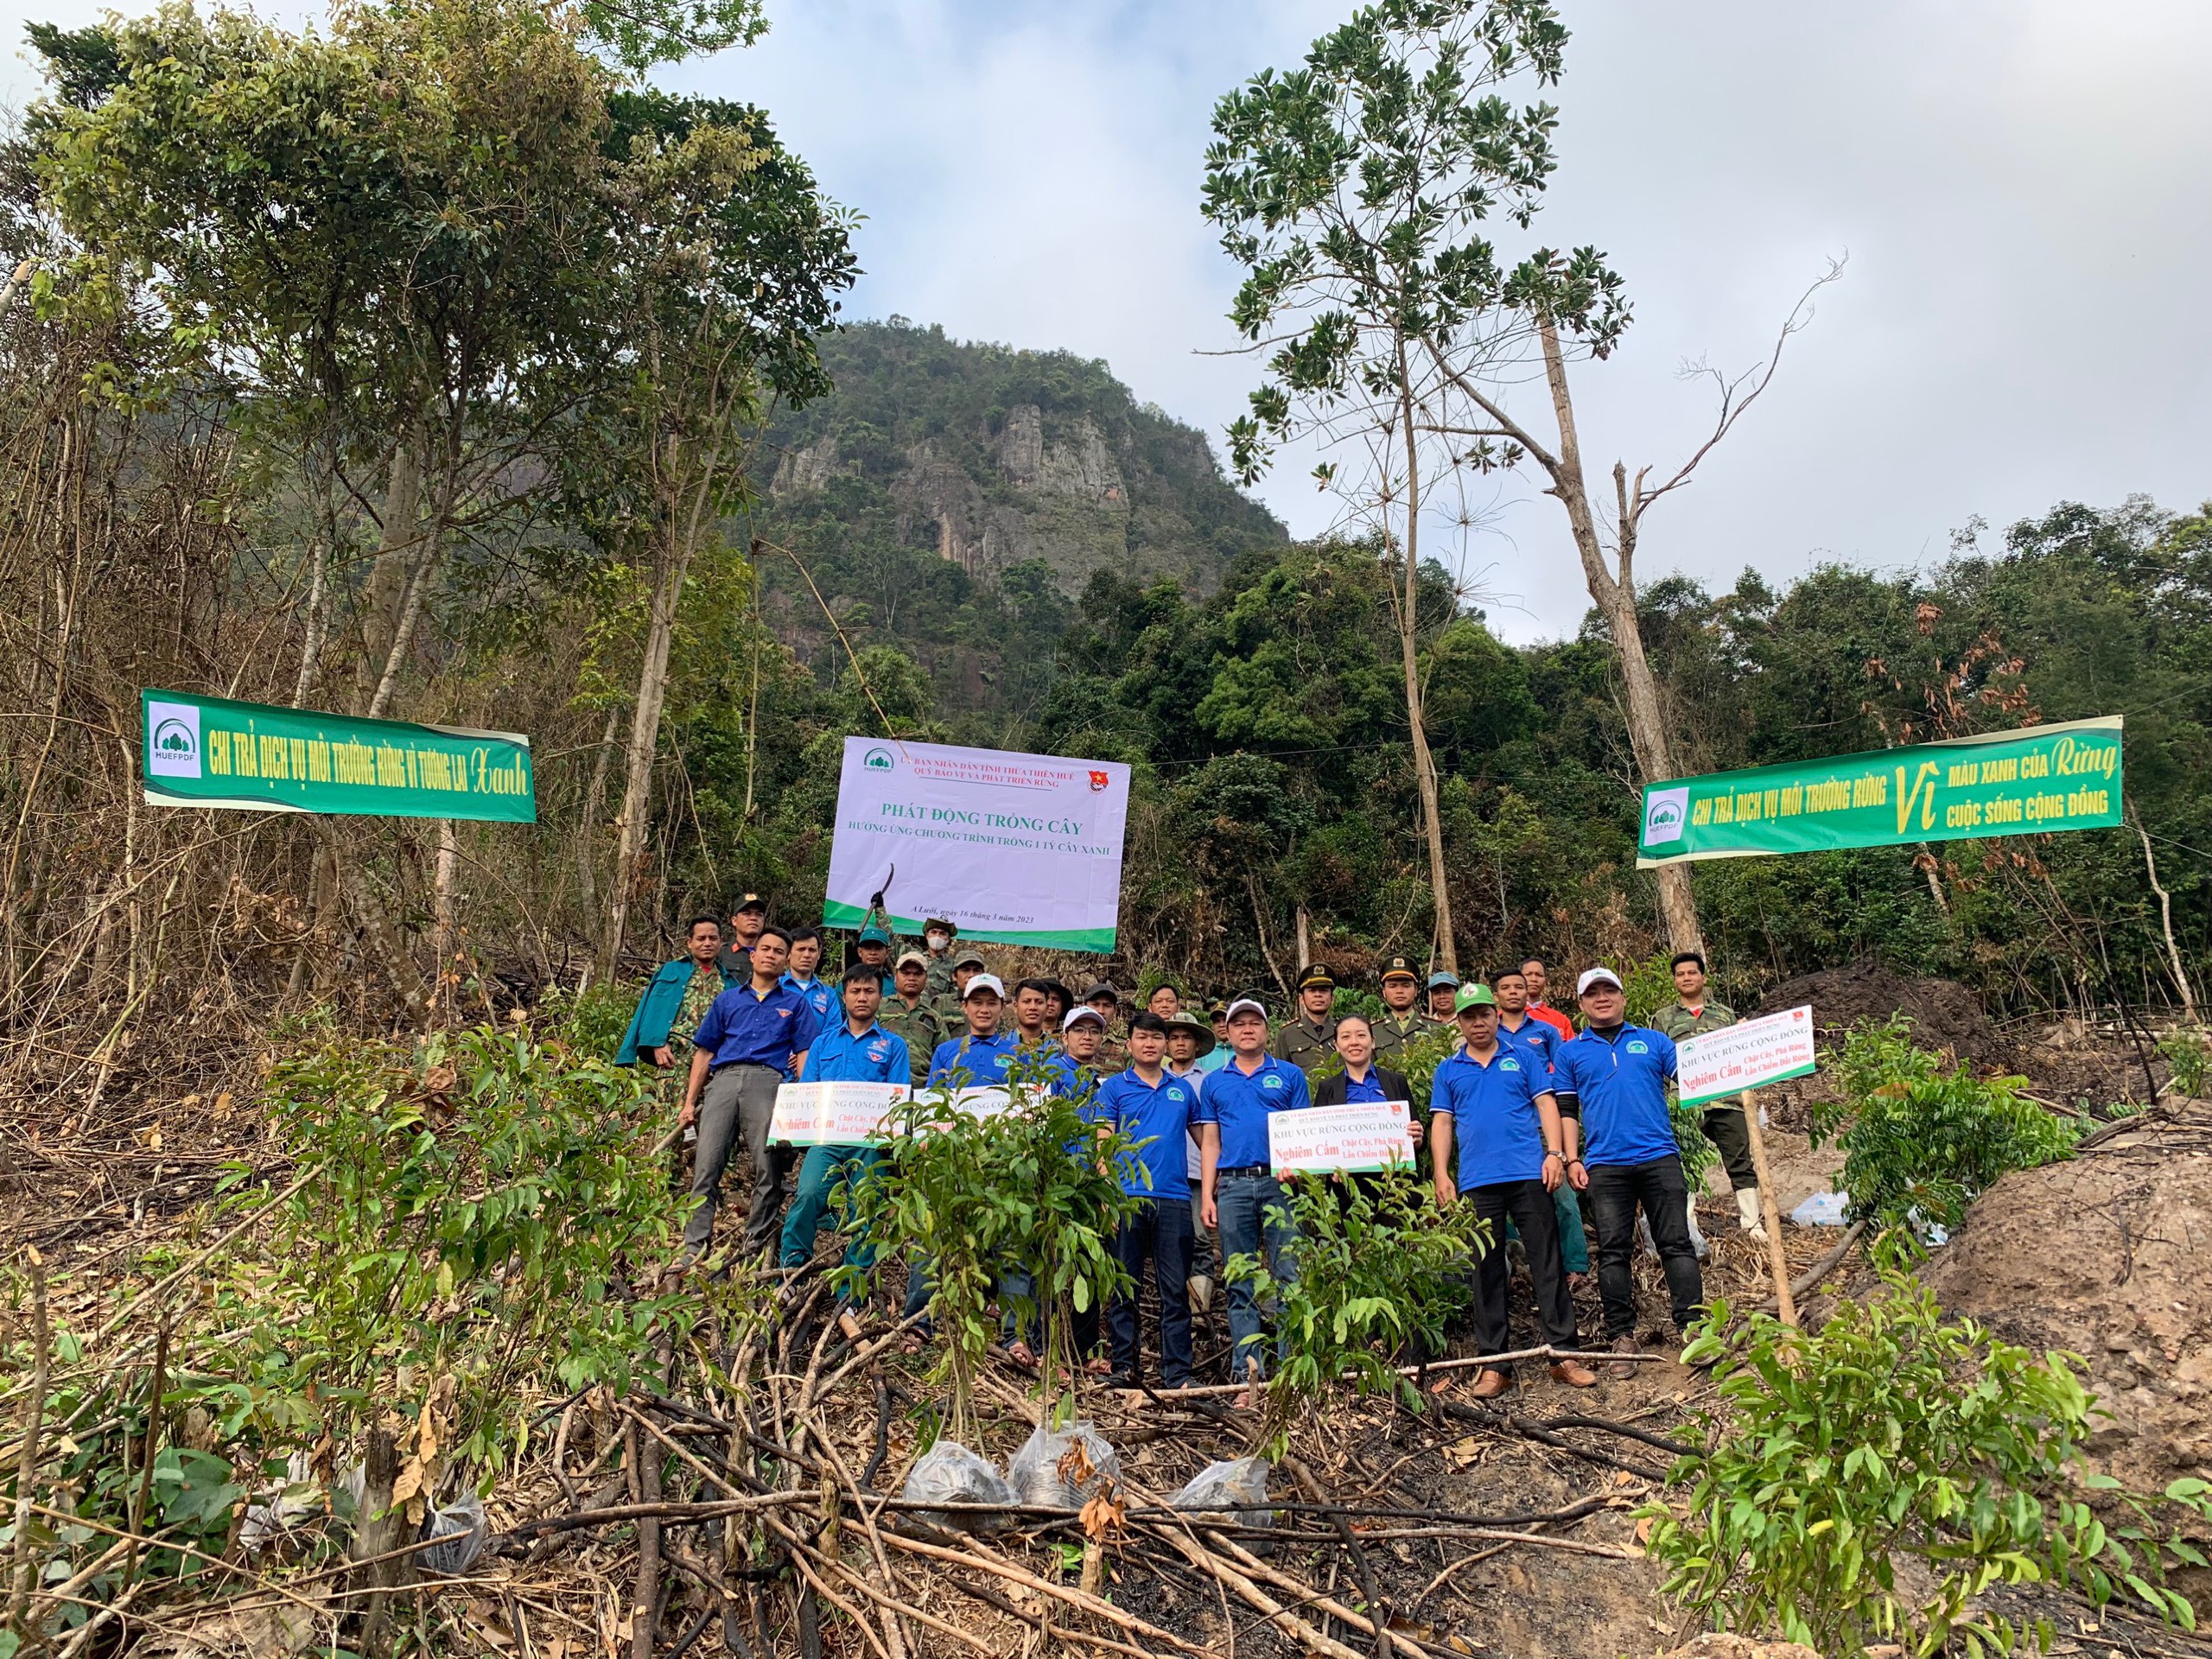 Hoạt động trồng cây tuyên truyền chính sách chi trả dịch vụ môi trường rừng, hưởng ứng chương trình trồng 1 tỷ cây xanh trên địa bàn xã Hồng Vân, huyện A Lưới